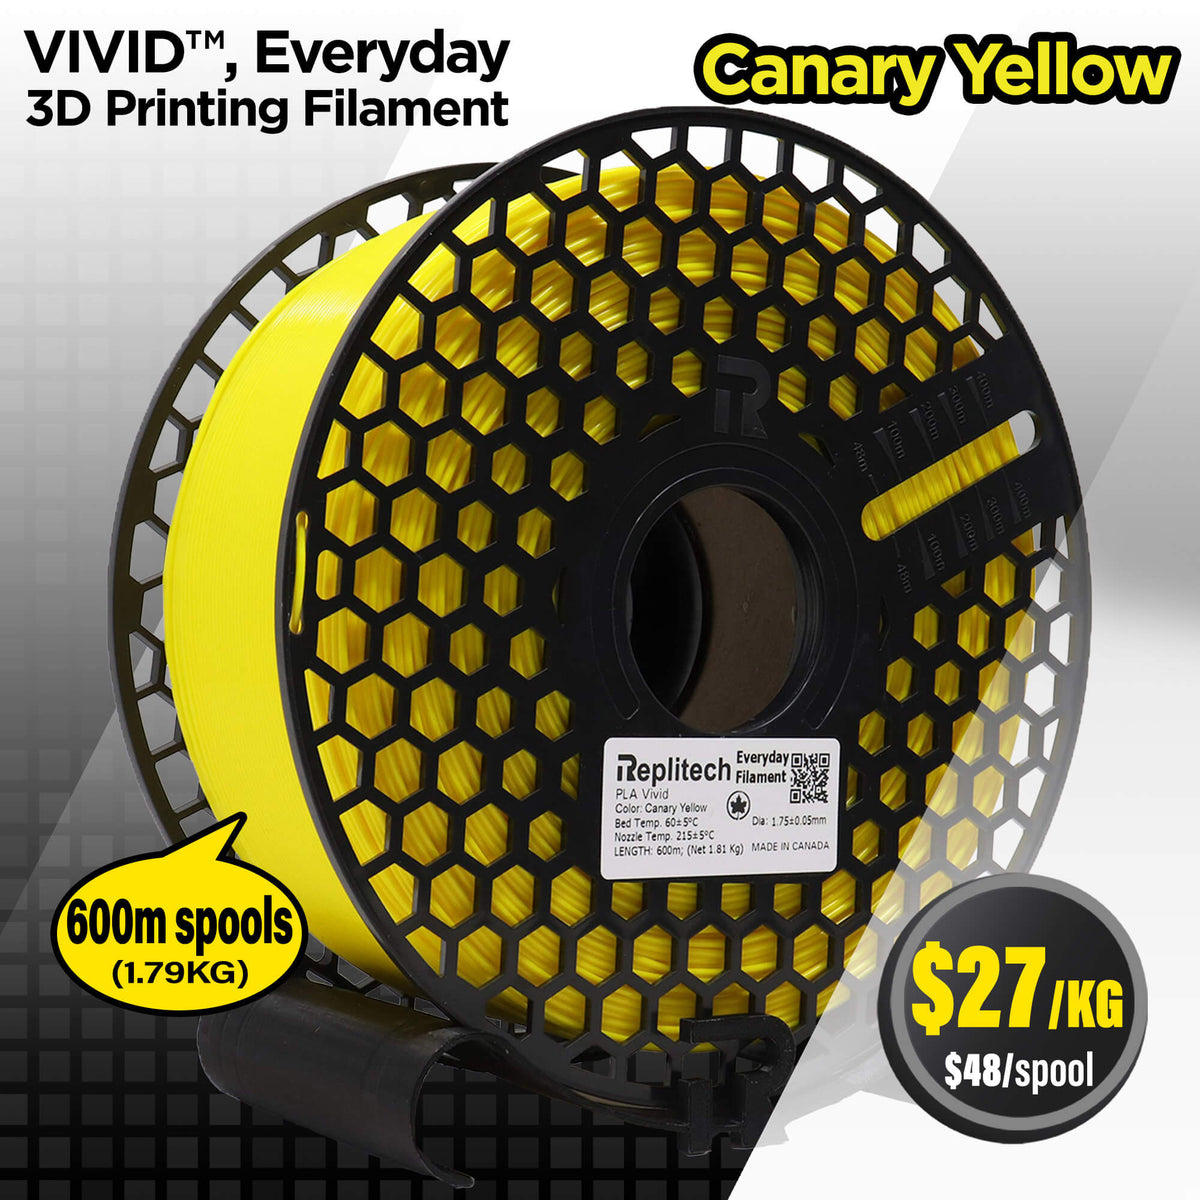 PLA Vivid Everyday Canary Yellow